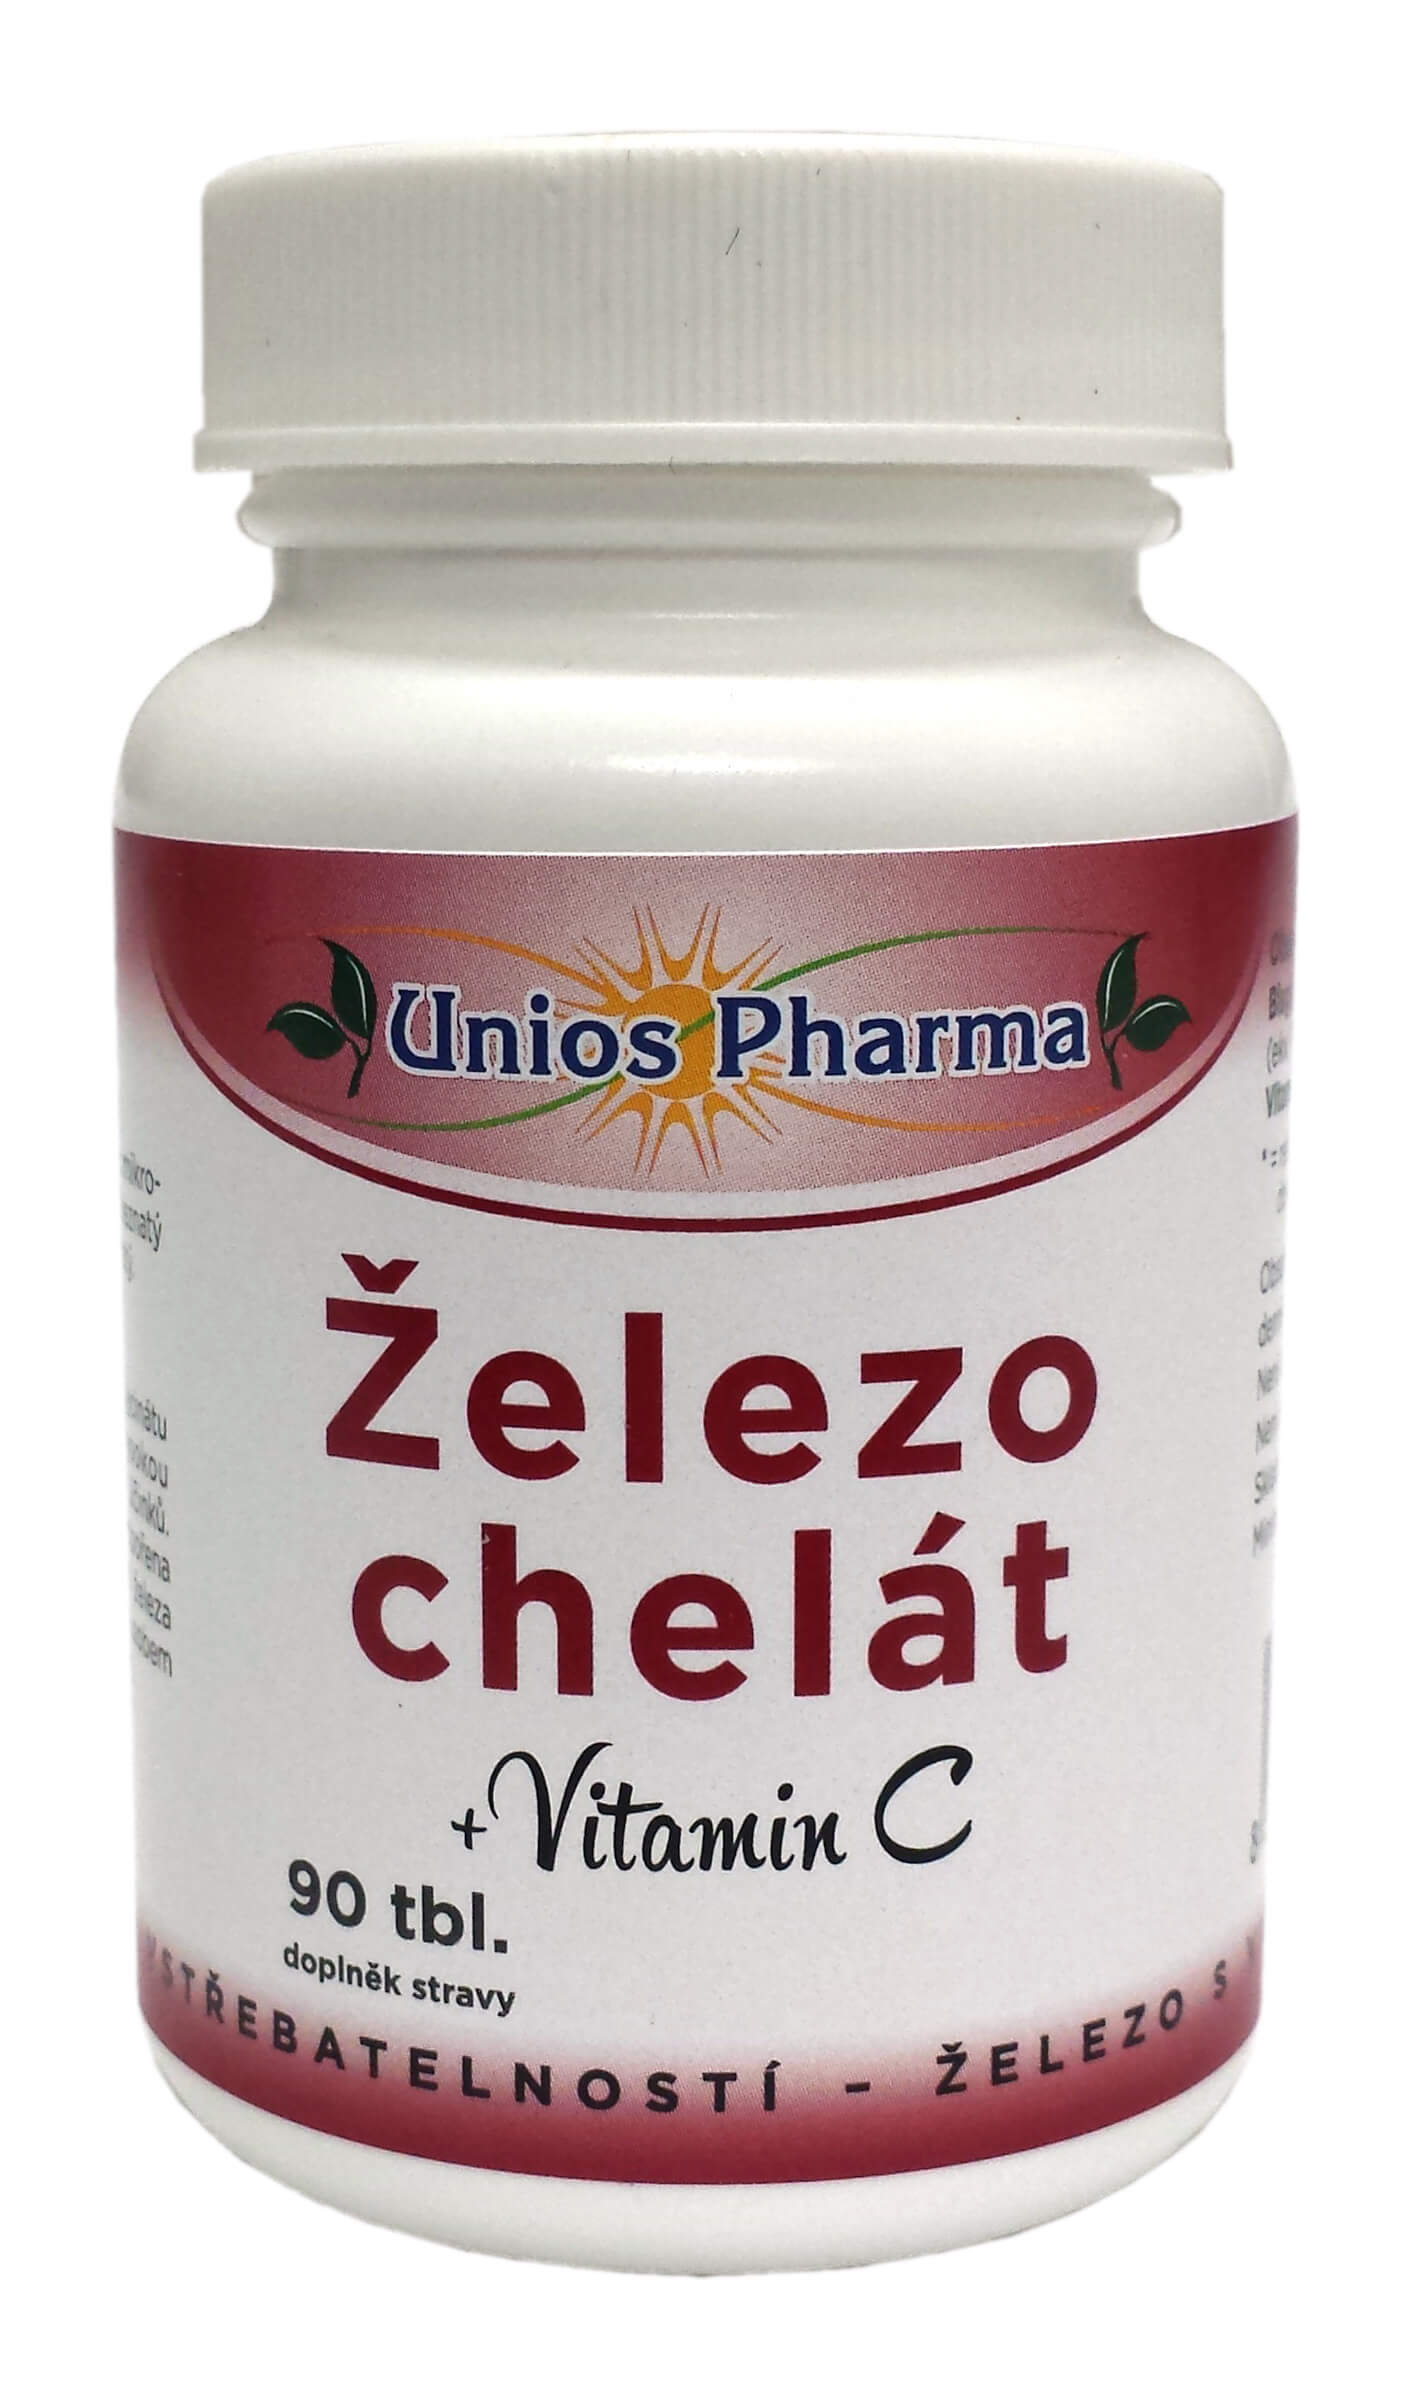 Zobrazit detail výrobku Unios Pharma Železo chelát + vitamín C 90 tbl.